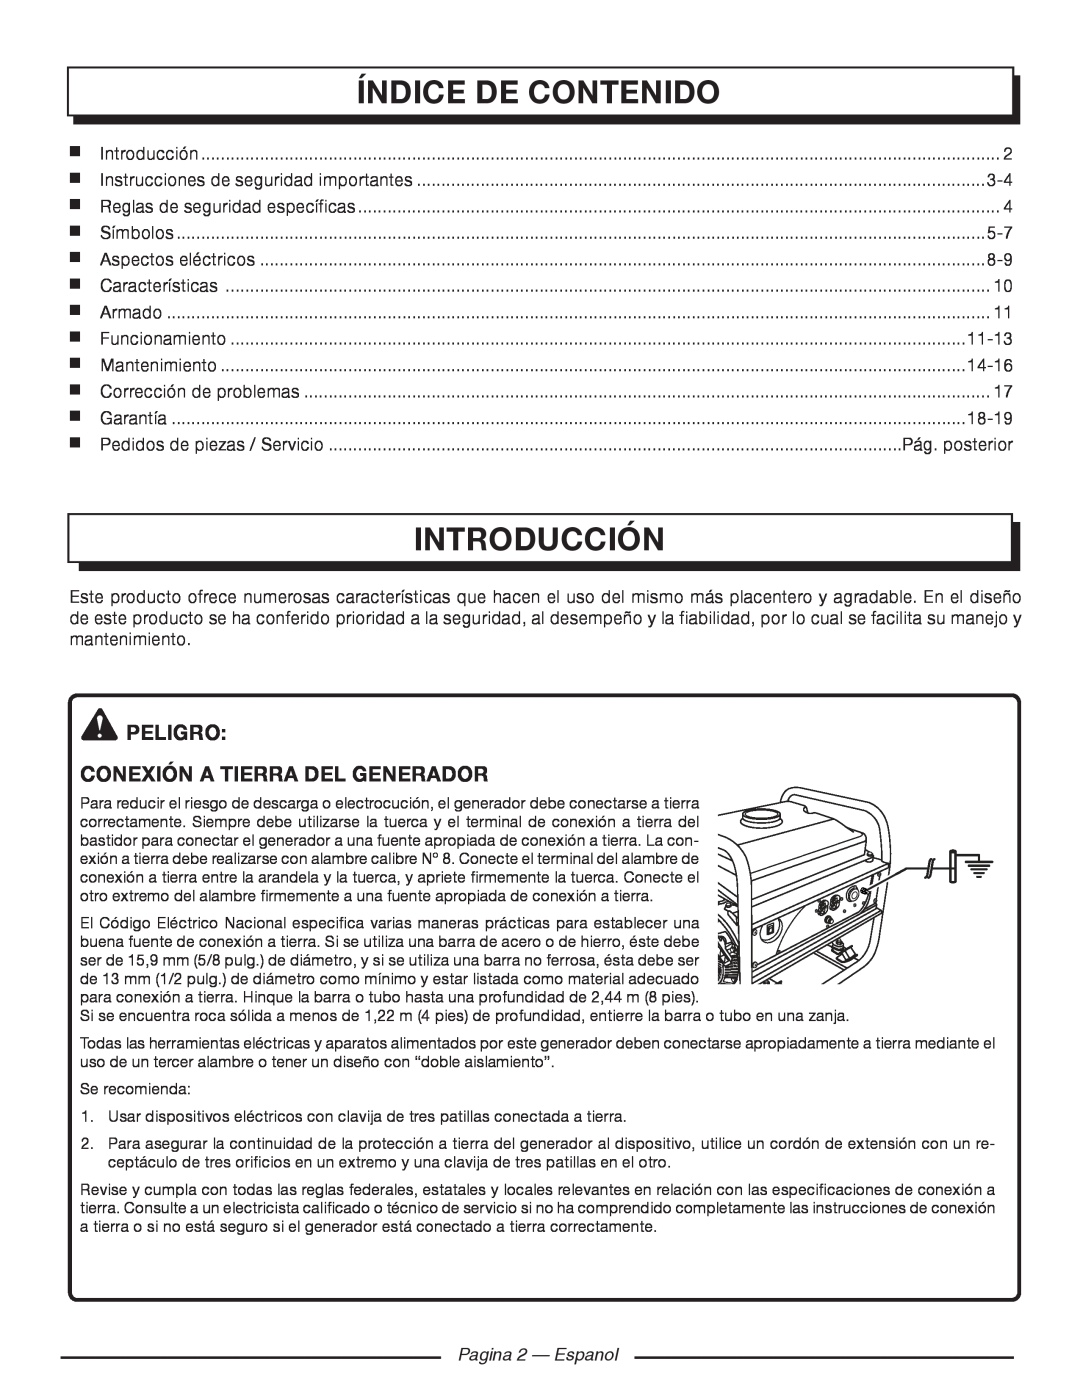 Homelite HGCA1400 Índice De Contenido, Introducción, peligro Conexión a tierra del generador, 11-13, 14-16, 18-19 